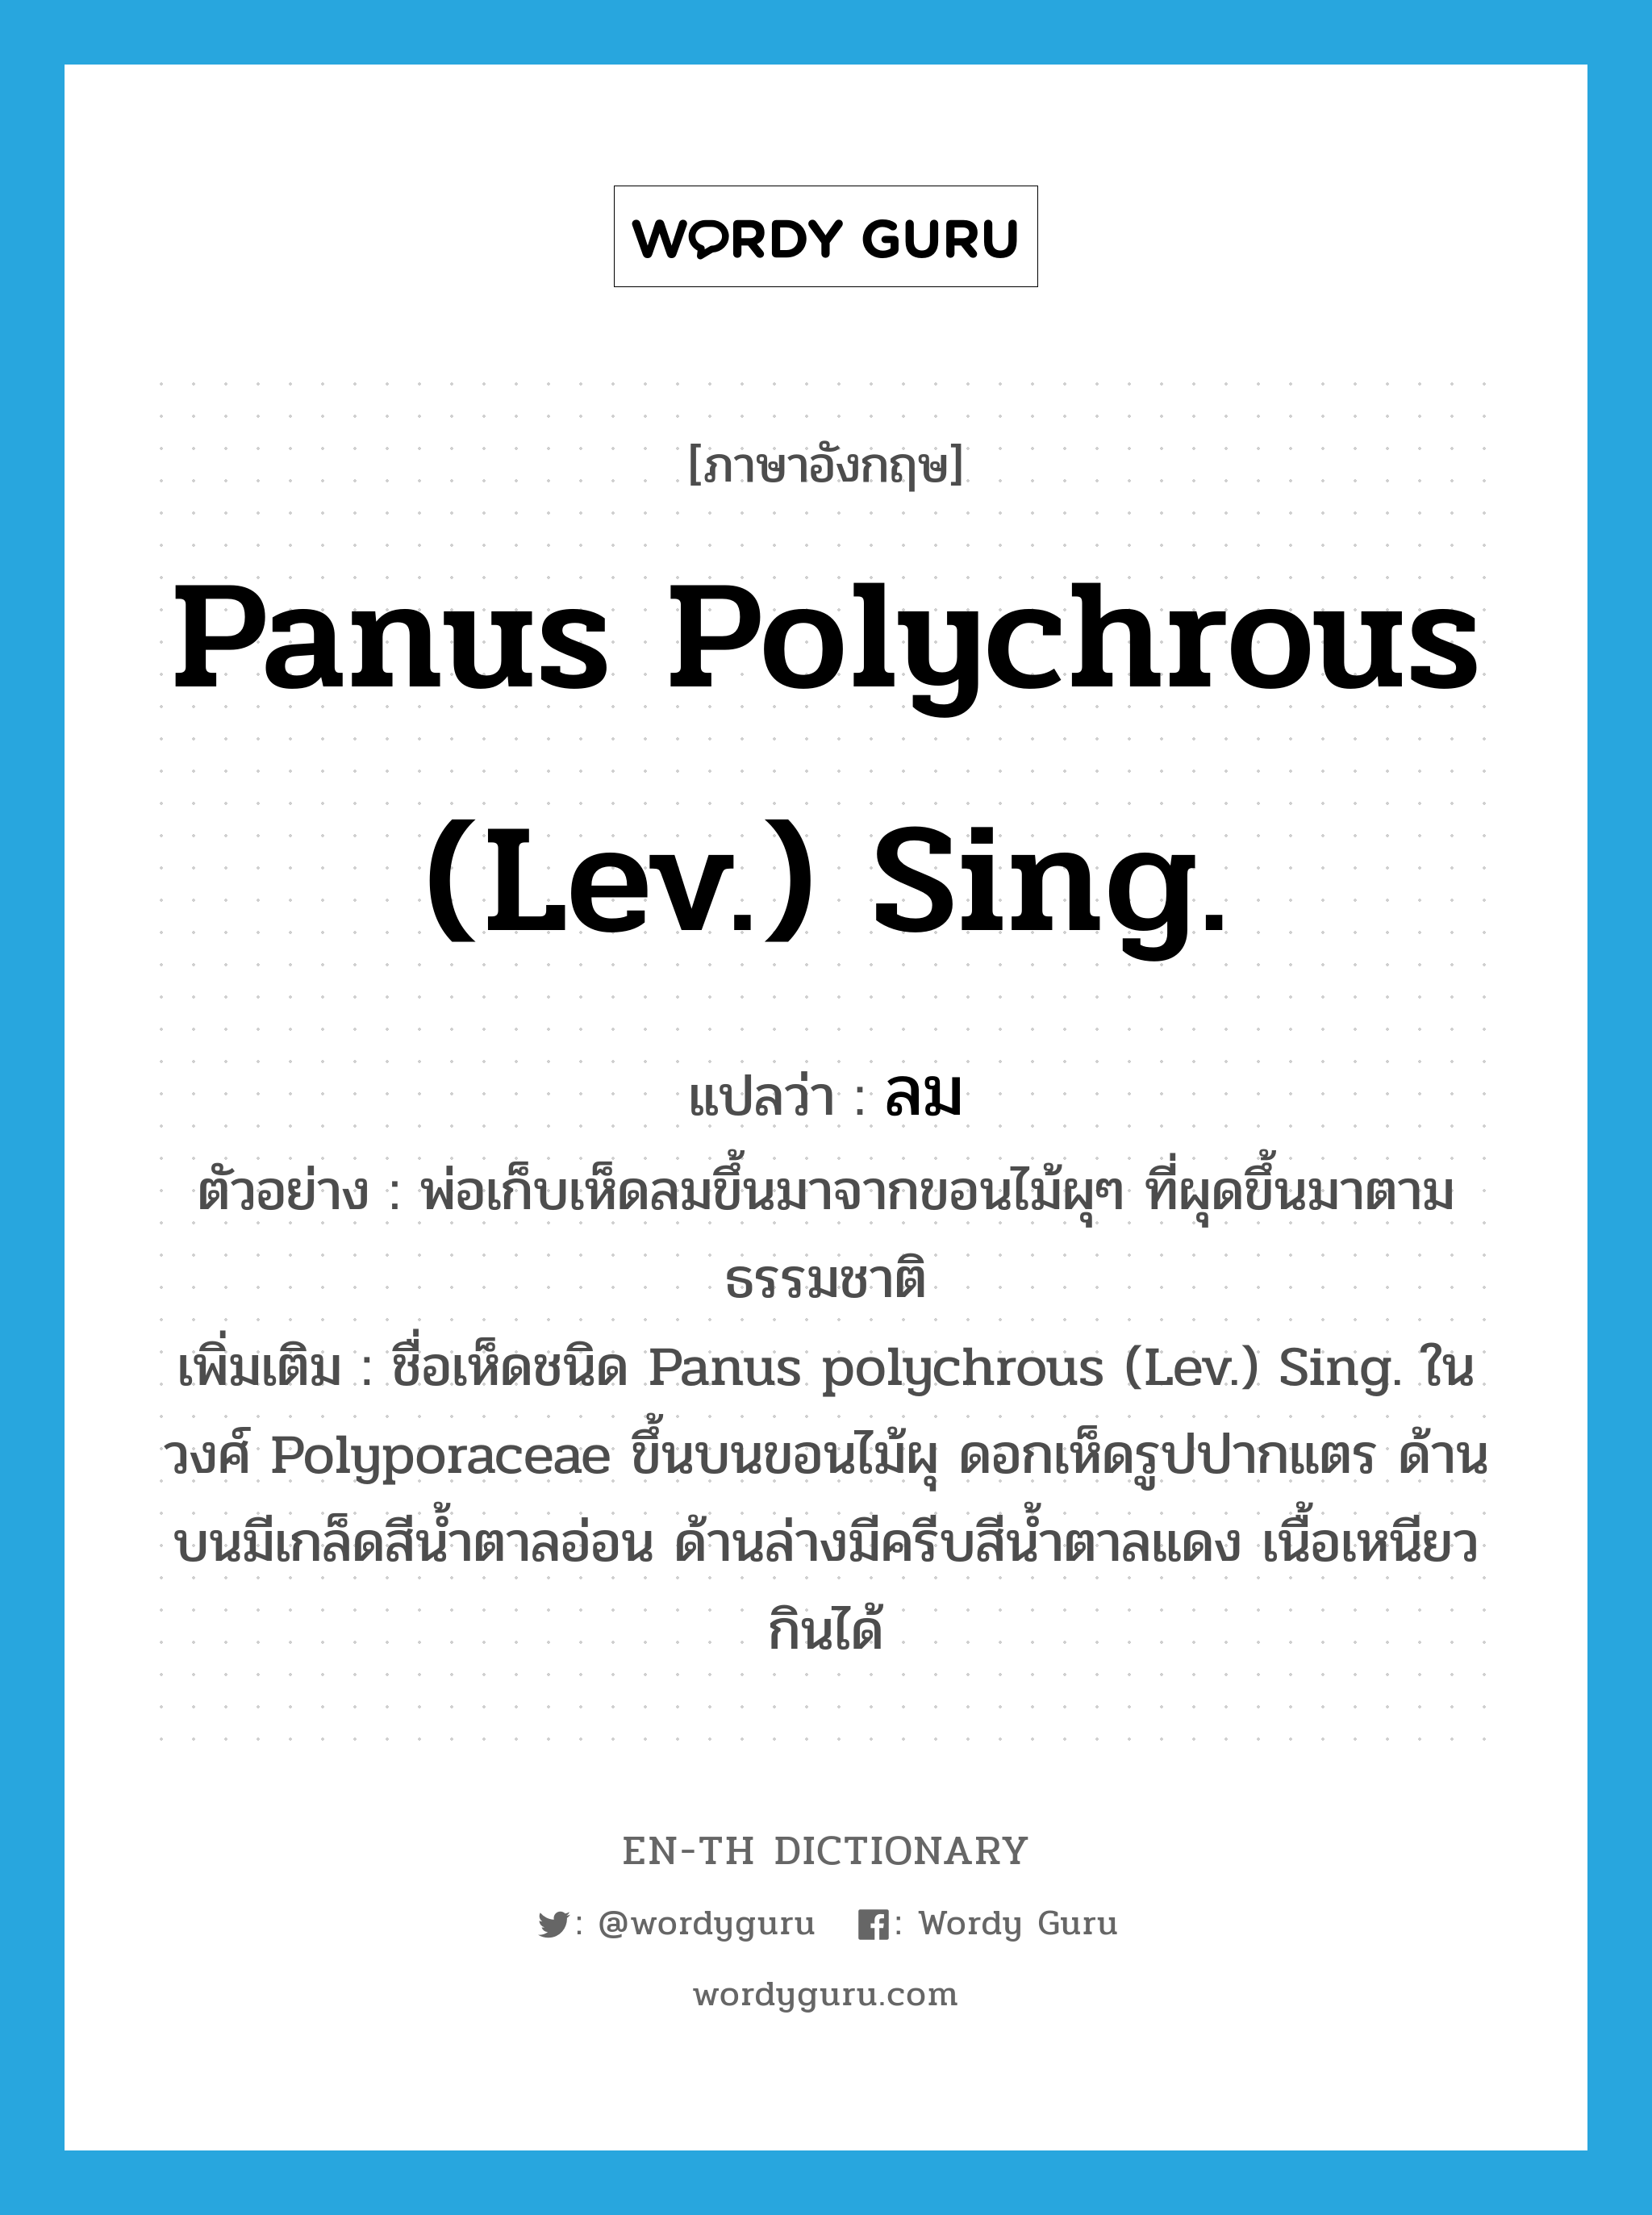 ลม ภาษาอังกฤษ?, คำศัพท์ภาษาอังกฤษ ลม แปลว่า Panus polychrous (Lev.) Sing. ประเภท N ตัวอย่าง พ่อเก็บเห็ดลมขึ้นมาจากขอนไม้ผุๆ ที่ผุดขึ้นมาตามธรรมชาติ เพิ่มเติม ชื่อเห็ดชนิด Panus polychrous (Lev.) Sing. ในวงศ์ Polyporaceae ขึ้นบนขอนไม้ผุ ดอกเห็ดรูปปากแตร ด้านบนมีเกล็ดสีน้ำตาลอ่อน ด้านล่างมีครีบสีน้ำตาลแดง เนื้อเหนียว กินได้ หมวด N